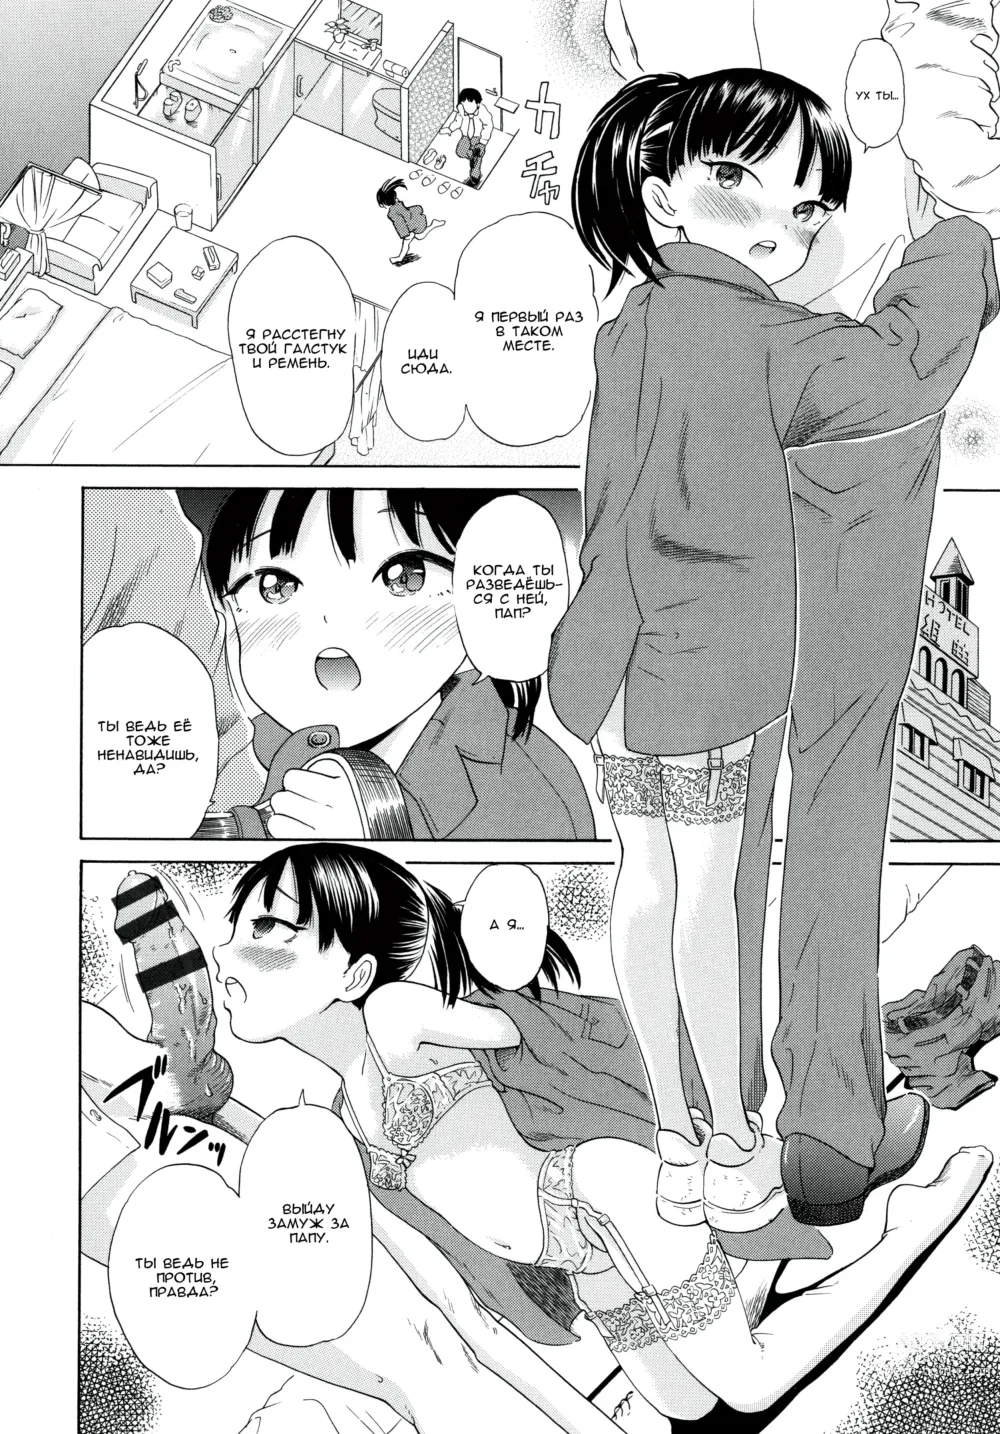 Page 6 of manga Папочка, пожалуйста, разведись!